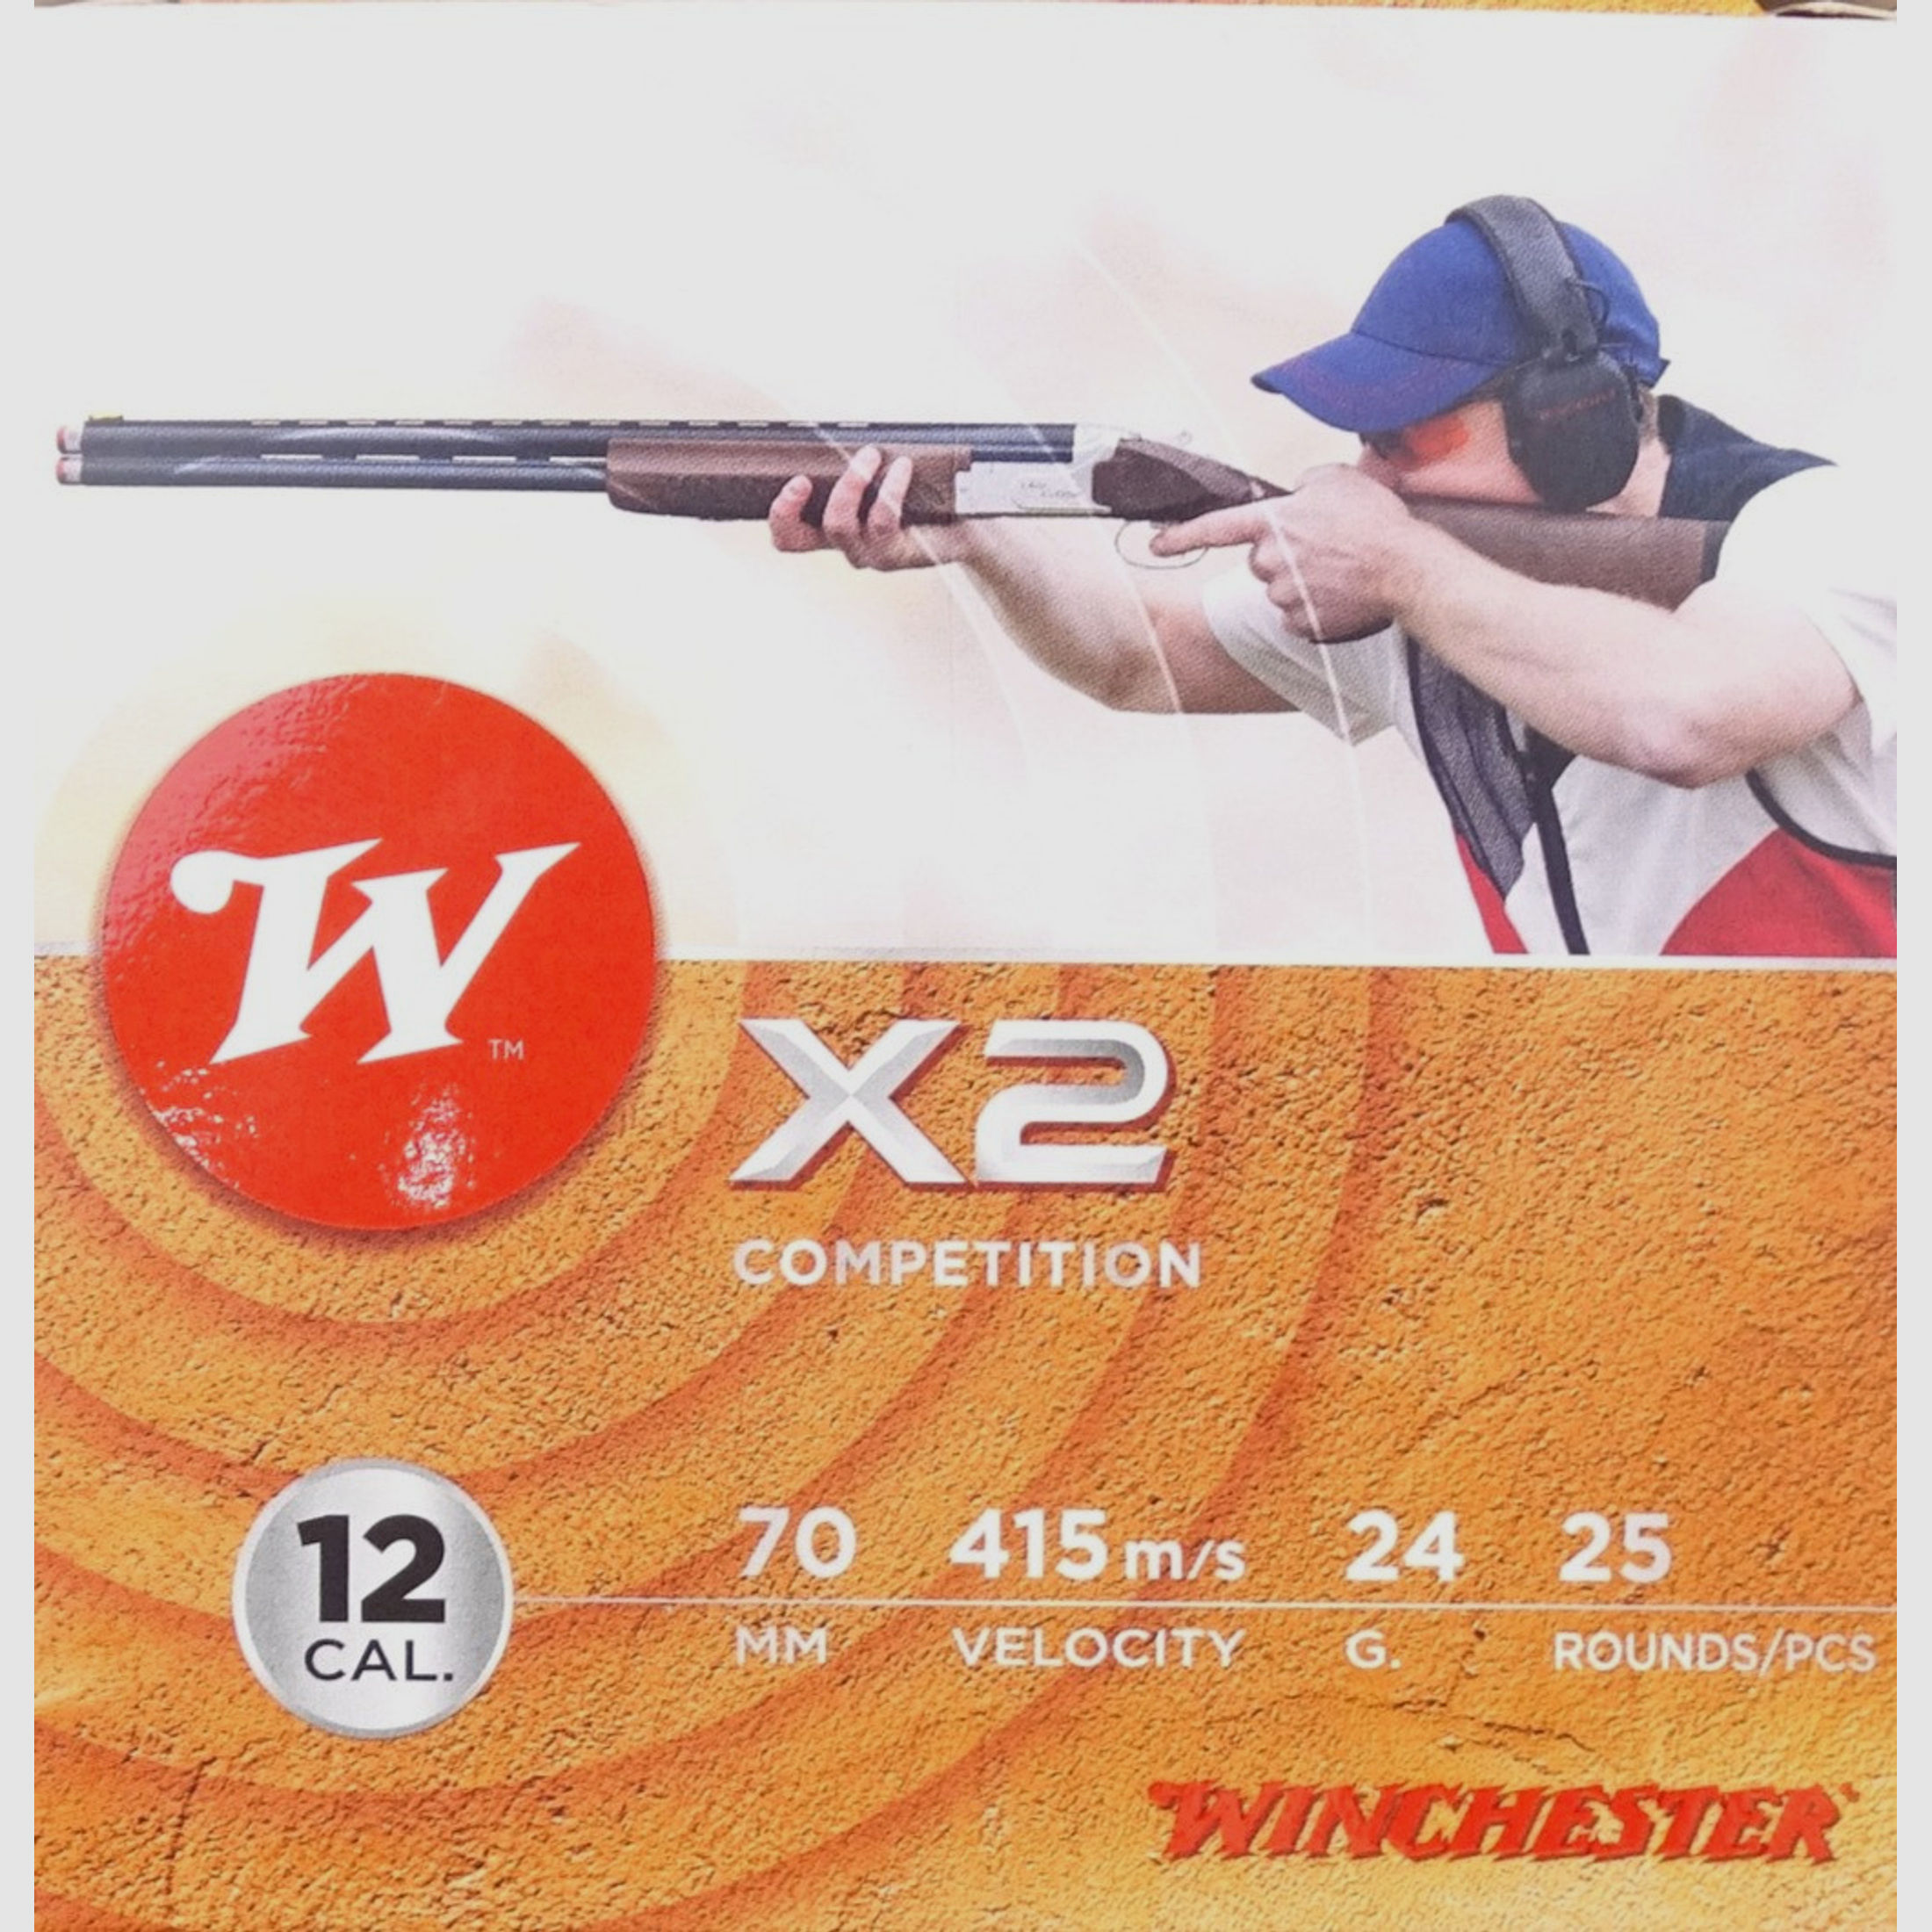 Winchester X2 blei  24g  Kal. 12/70